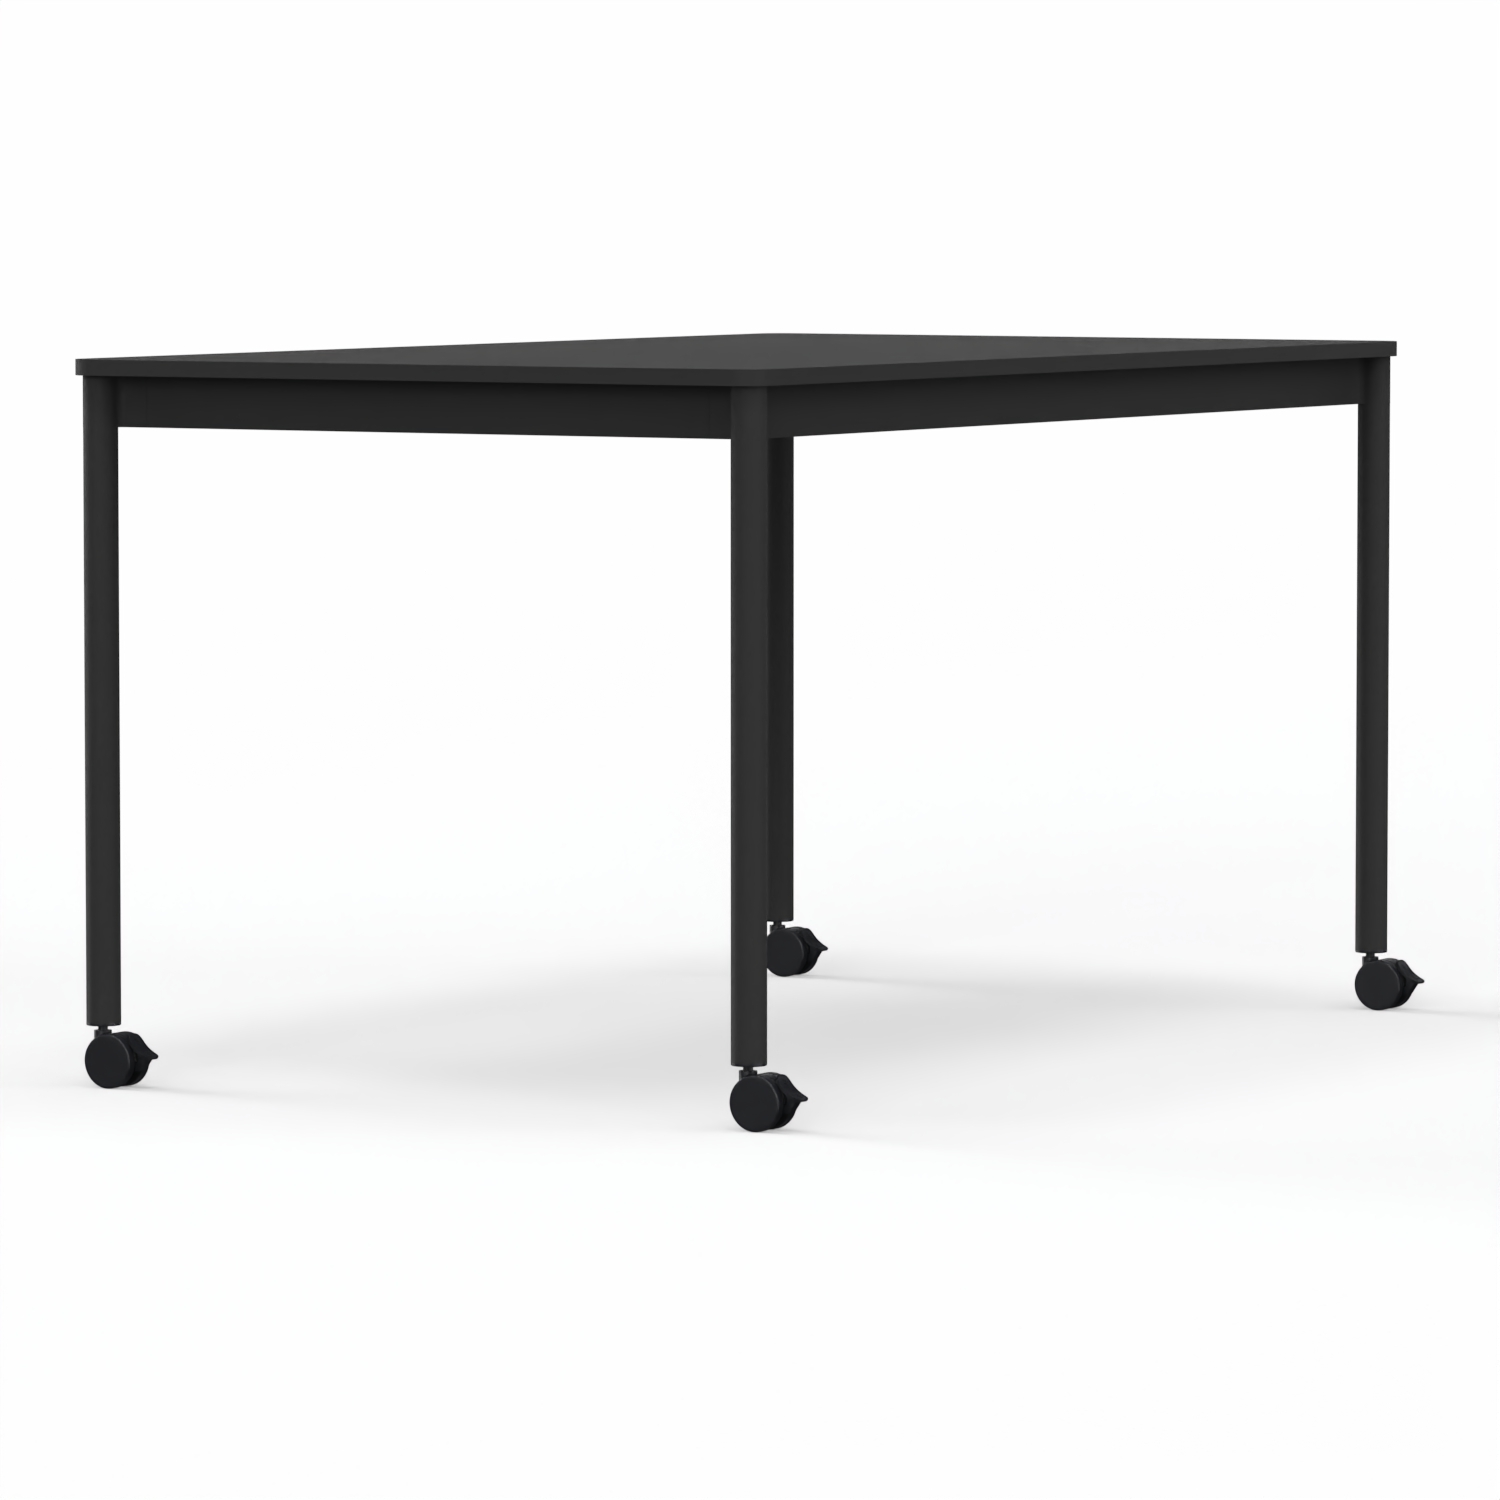 Base Table With Castors / 140 x 80 cm 64430